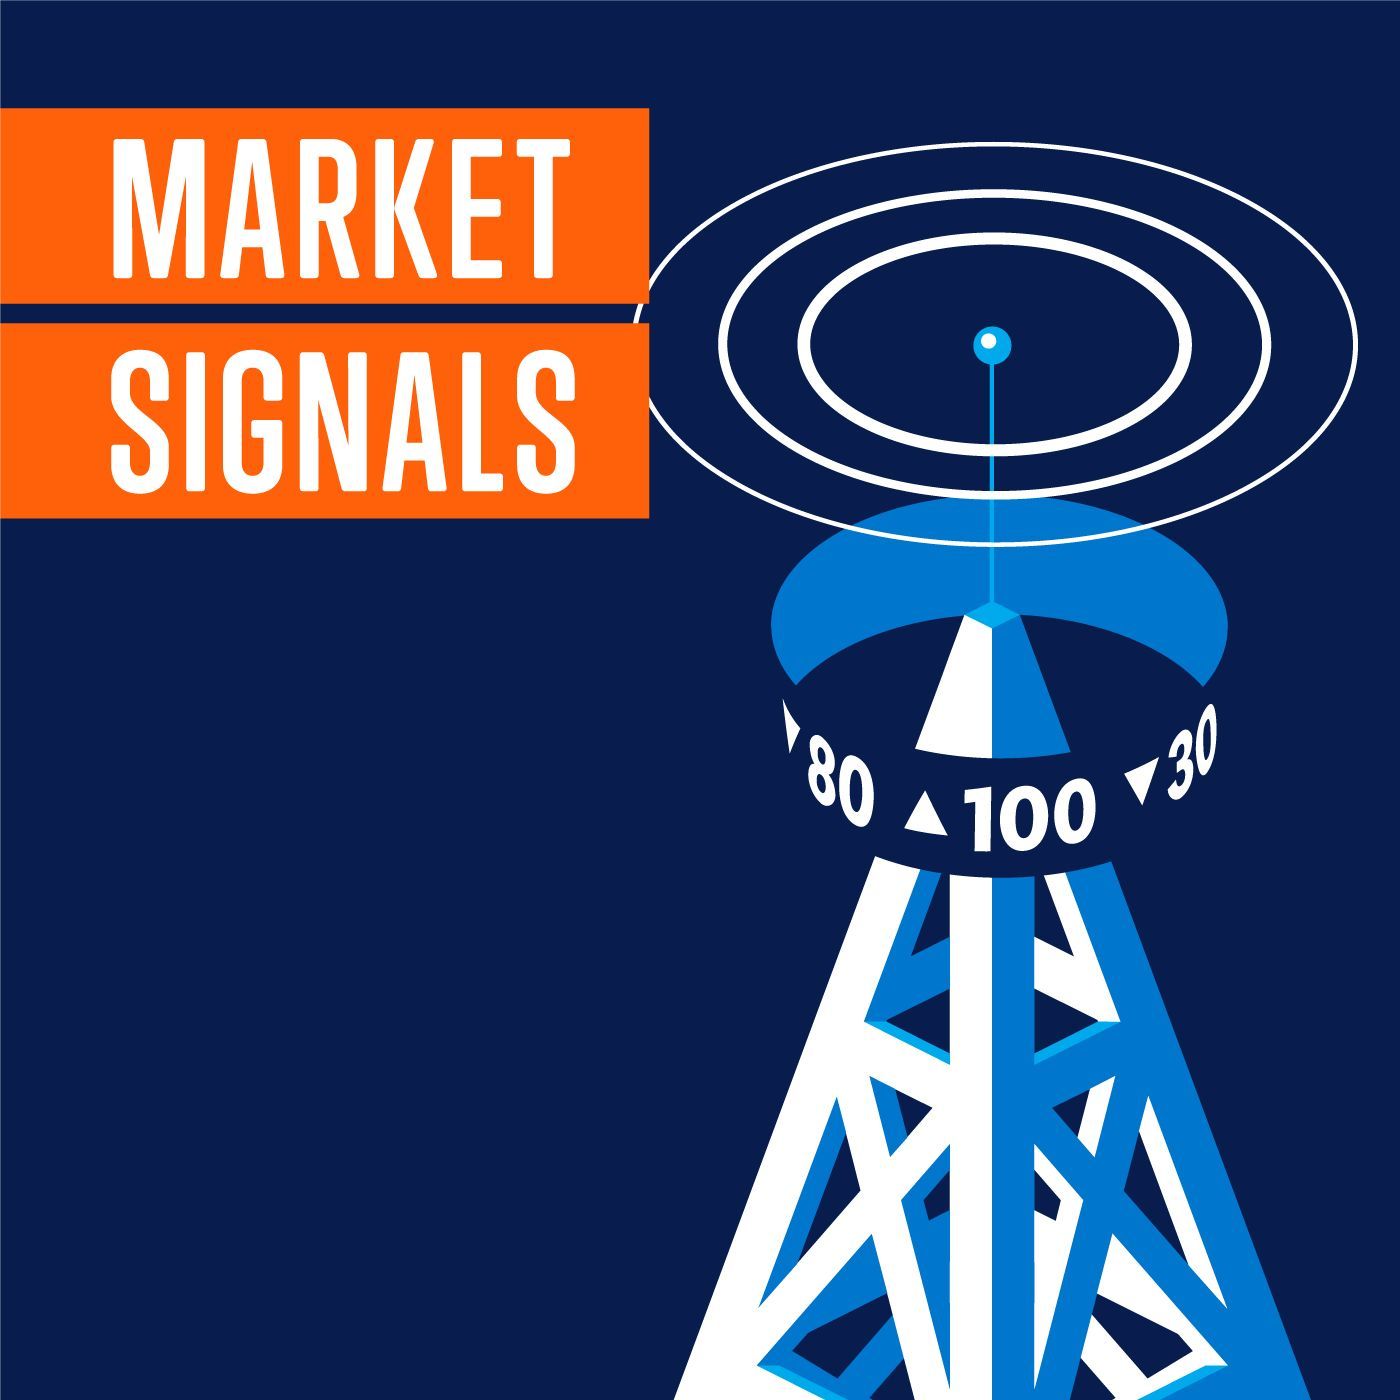 The LPL Research Final Four | LPL Market Signals